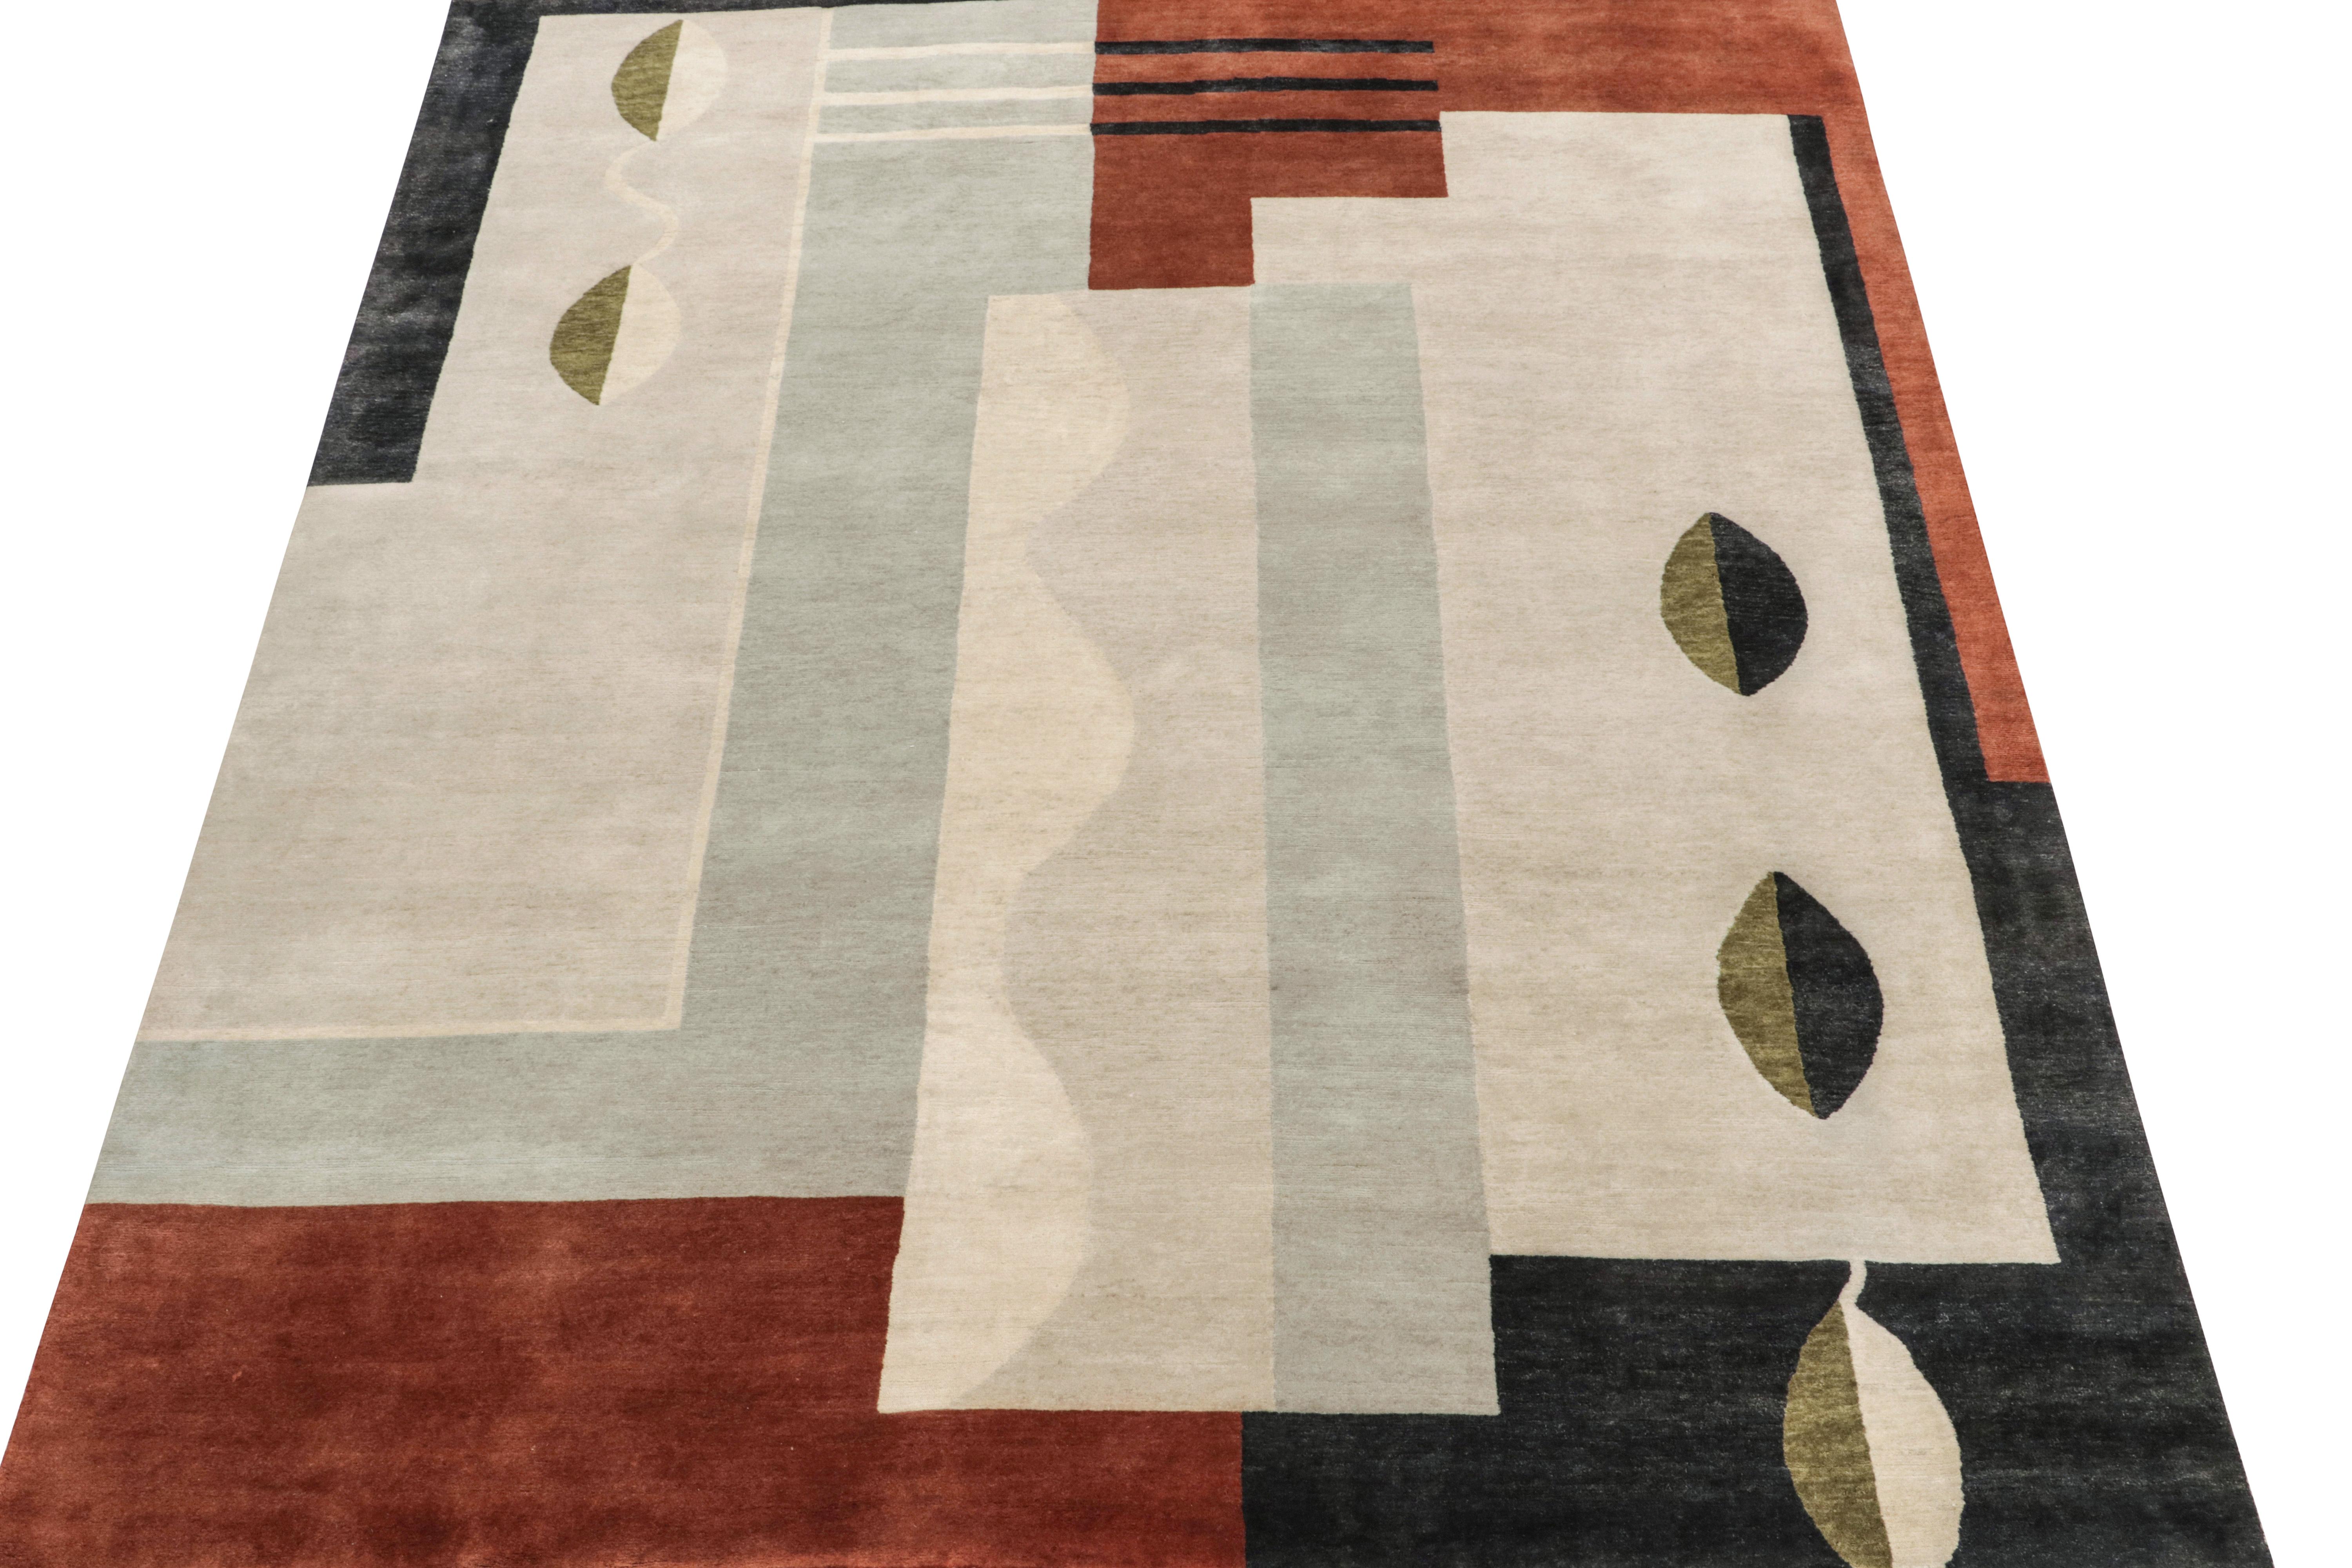 Indien Rug & Kilim's French Art Deco Style Rug in Gray, Brown & Black Geometric Pattern (tapis de style Art déco français à motifs géométriques gris, bruns et noirs) en vente